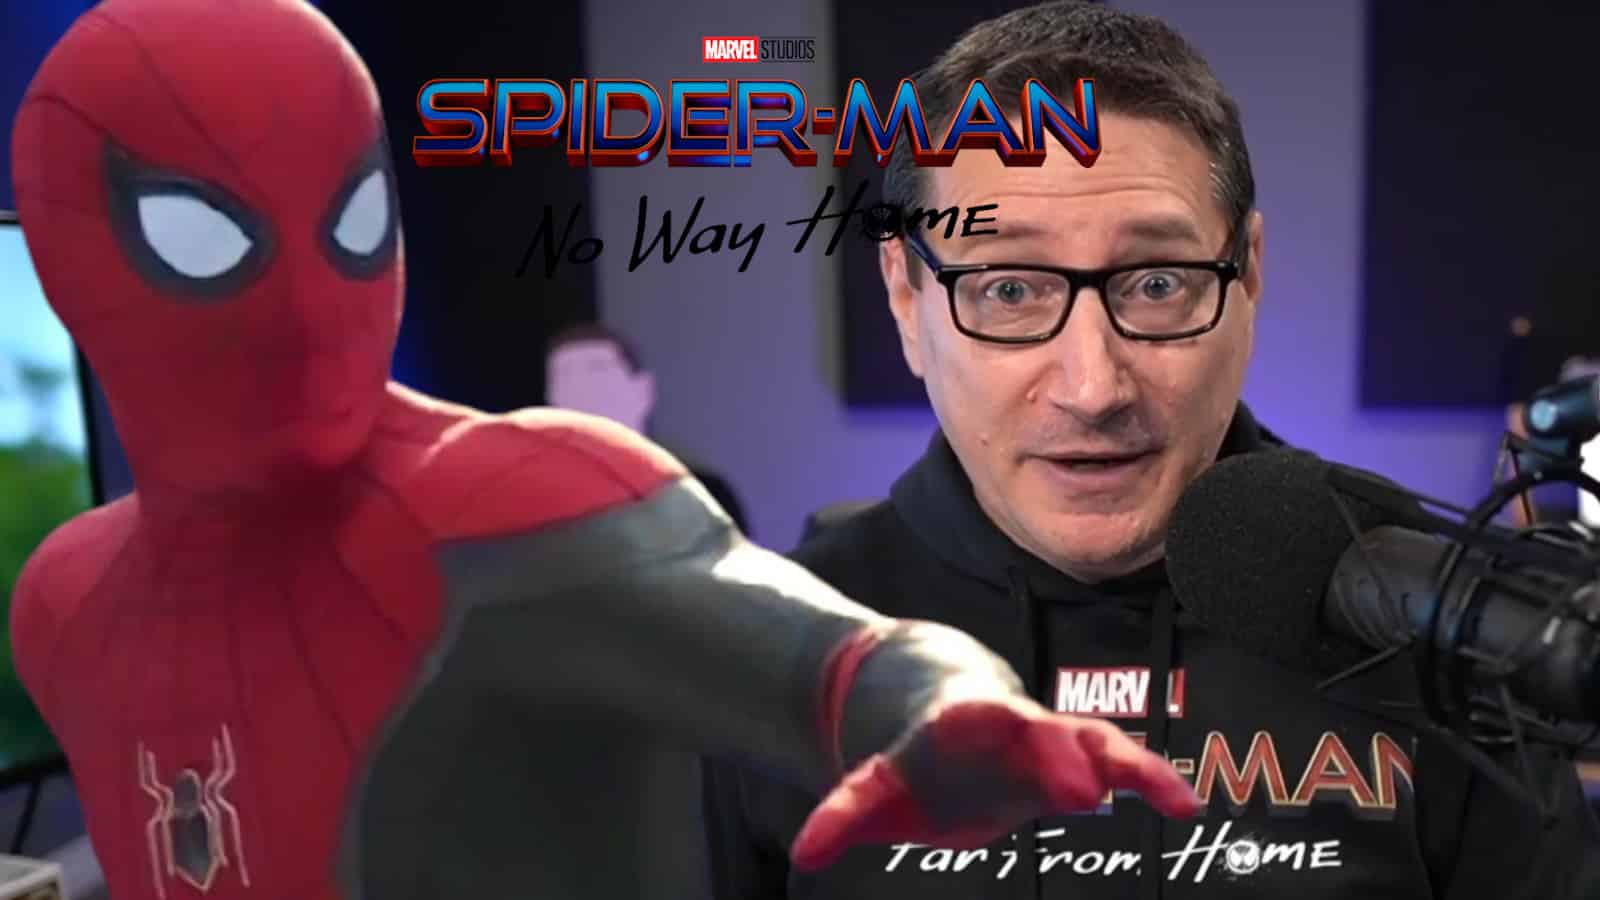 John Campea leaks Marvel spider-man pics